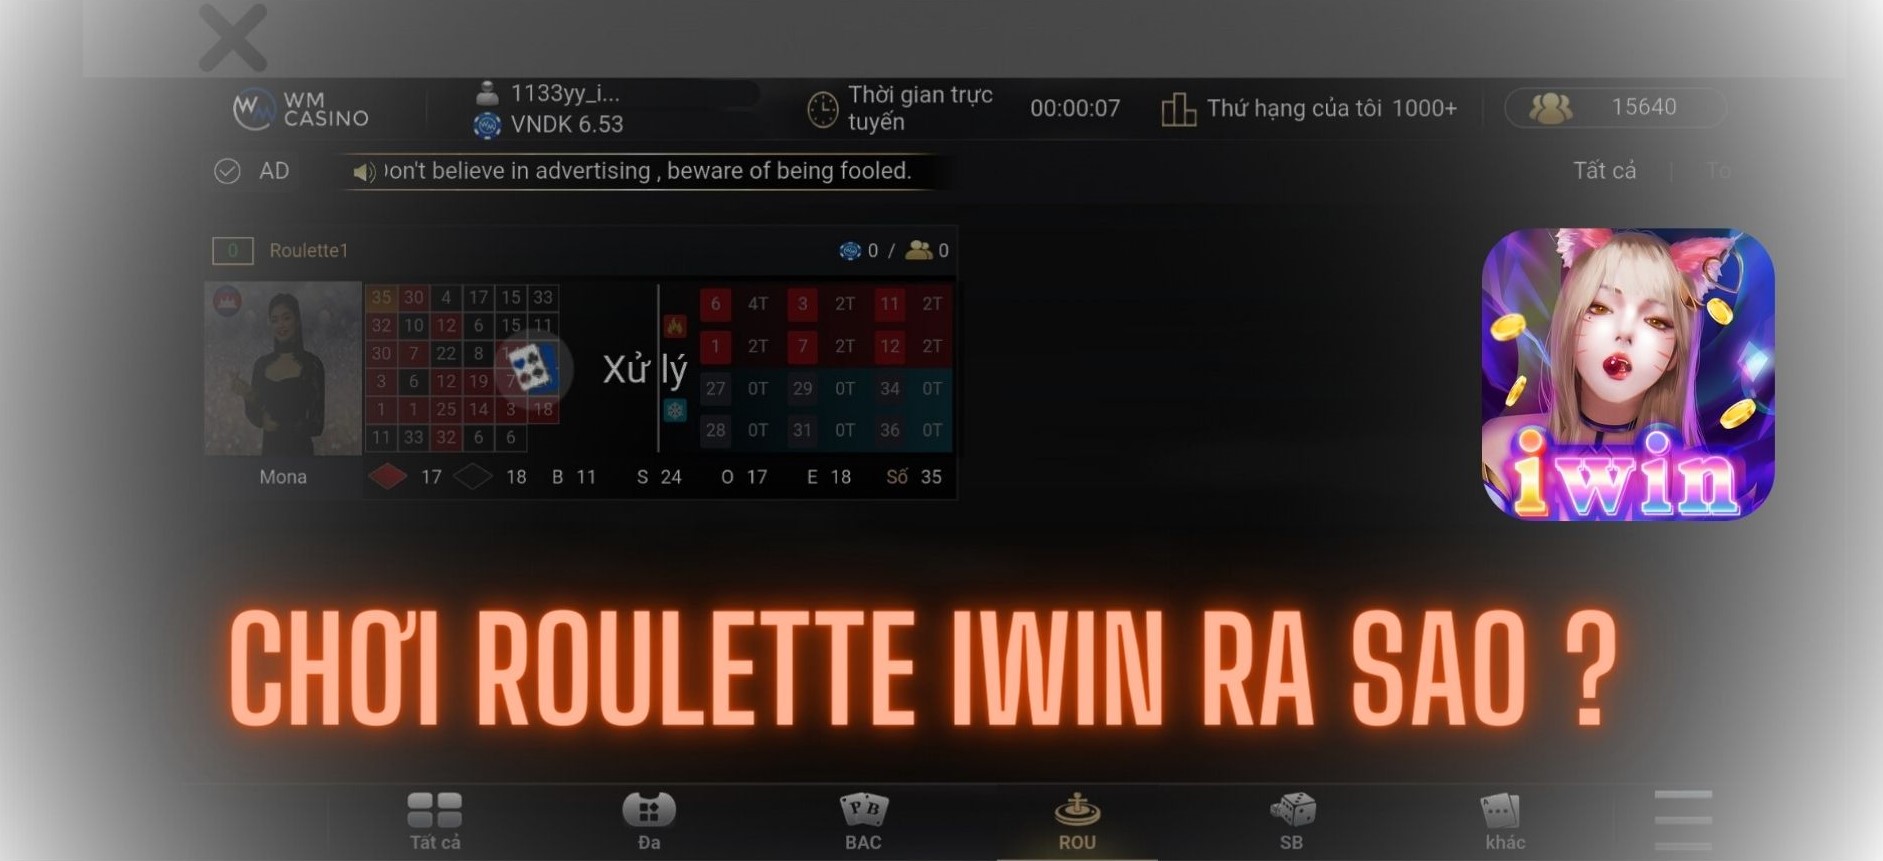 Tổng quan về game cá cược Roulette IWIN